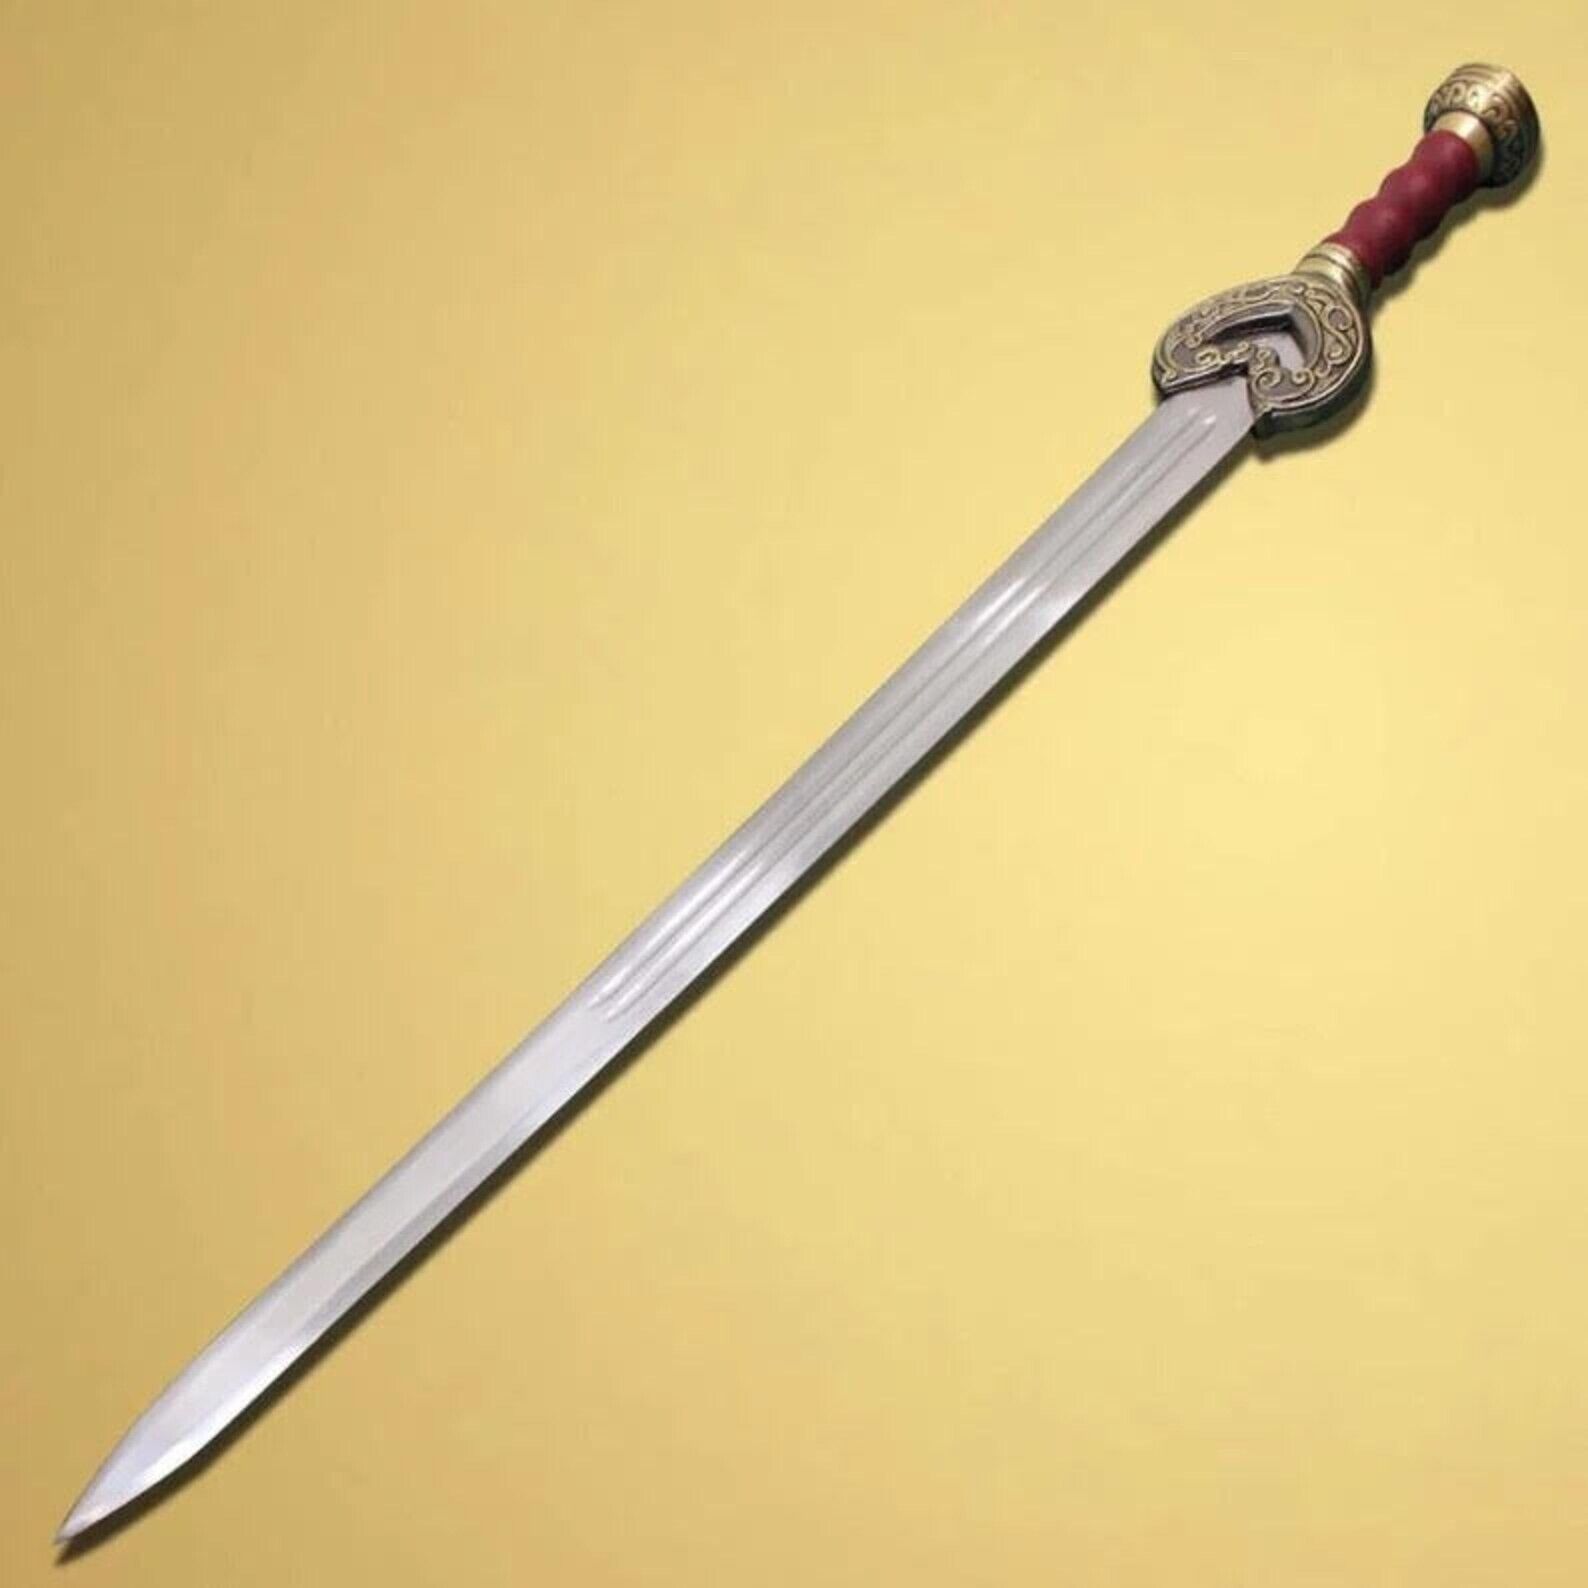 Handmade Herugrim Sword, Hand Forged Stainless Steel Sword, Viking Swords